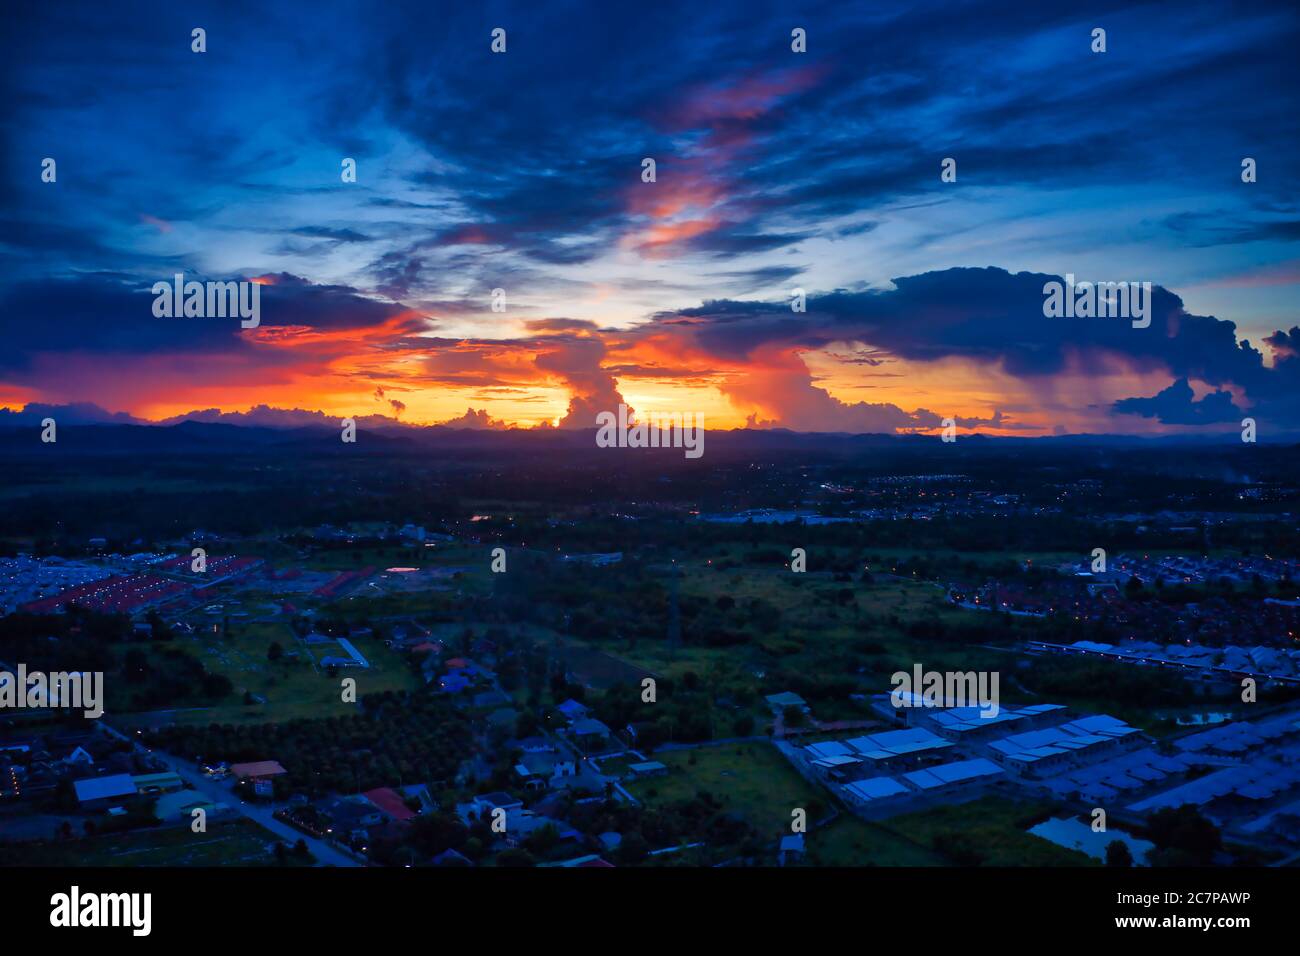 Cette photo unique montre le paysage arrière de Hua Hin en Thaïlande pendant un coucher de soleil avec un grand ciel. Vous pouvez également voir une chaîne de montagnes à l'arrière. Banque D'Images